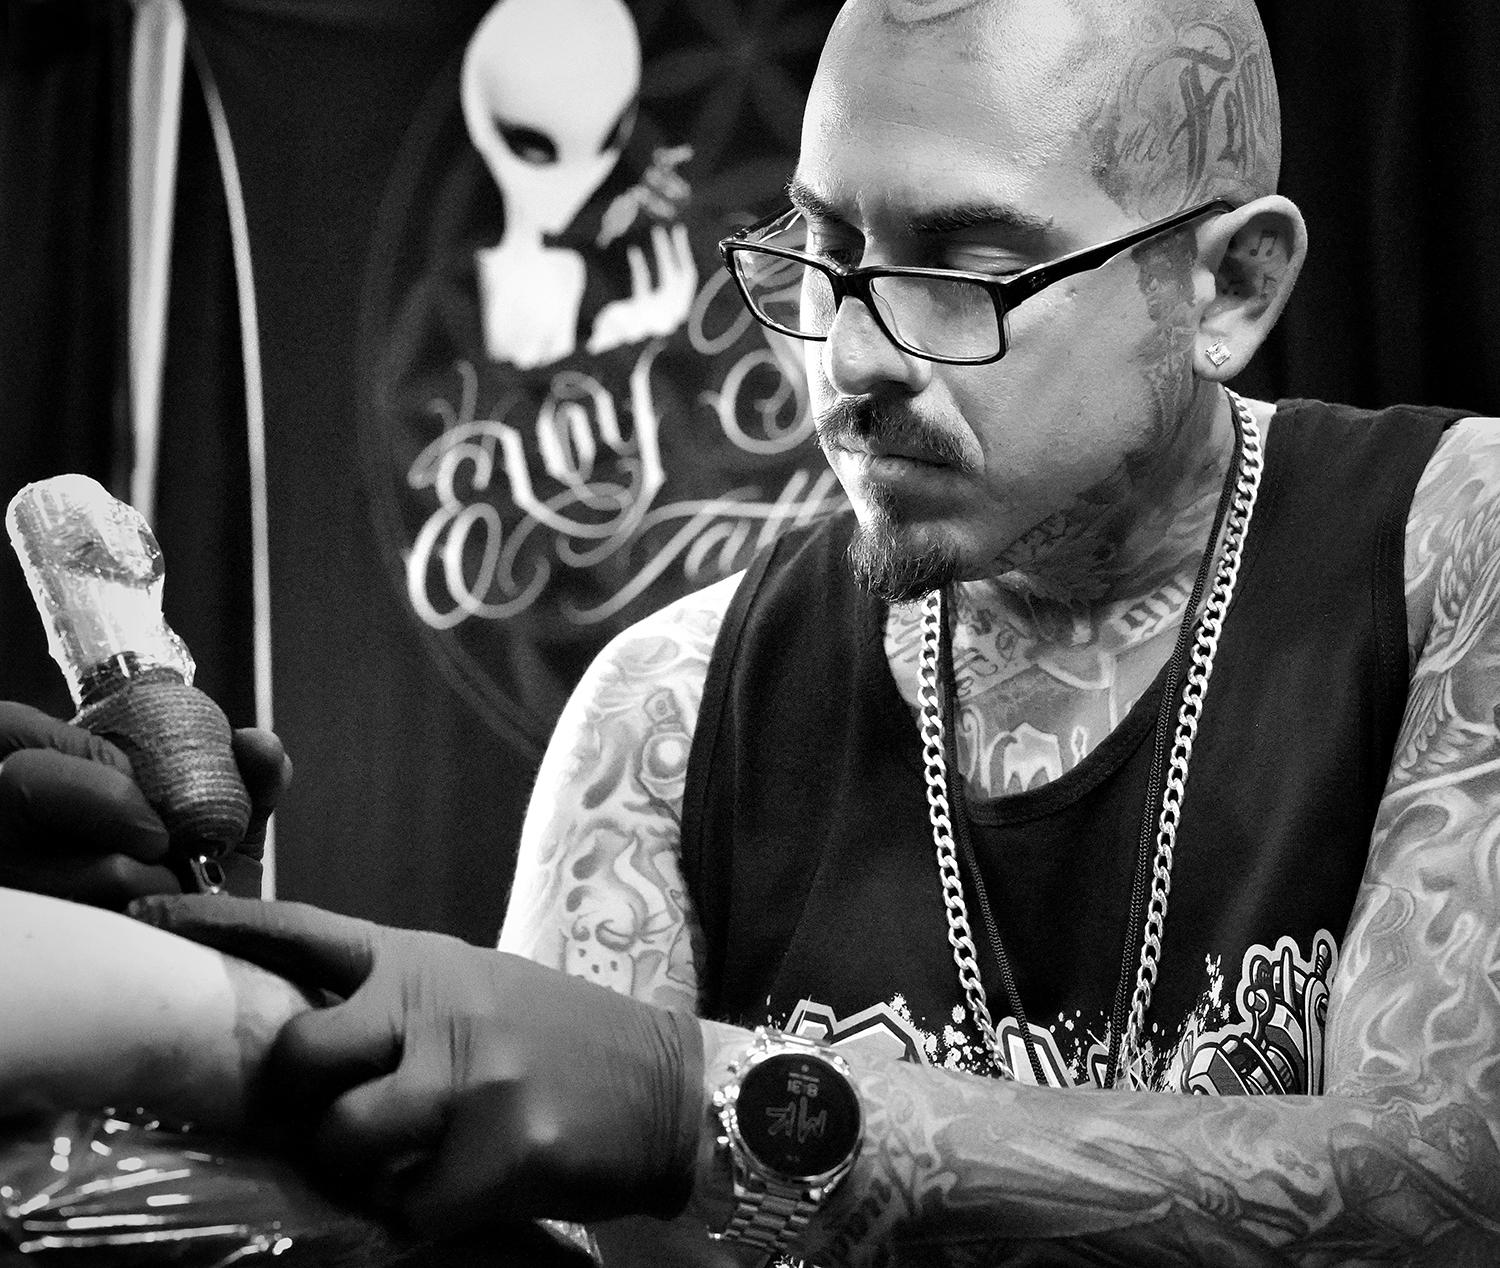 tattooer Jbad at seaside tattoo show